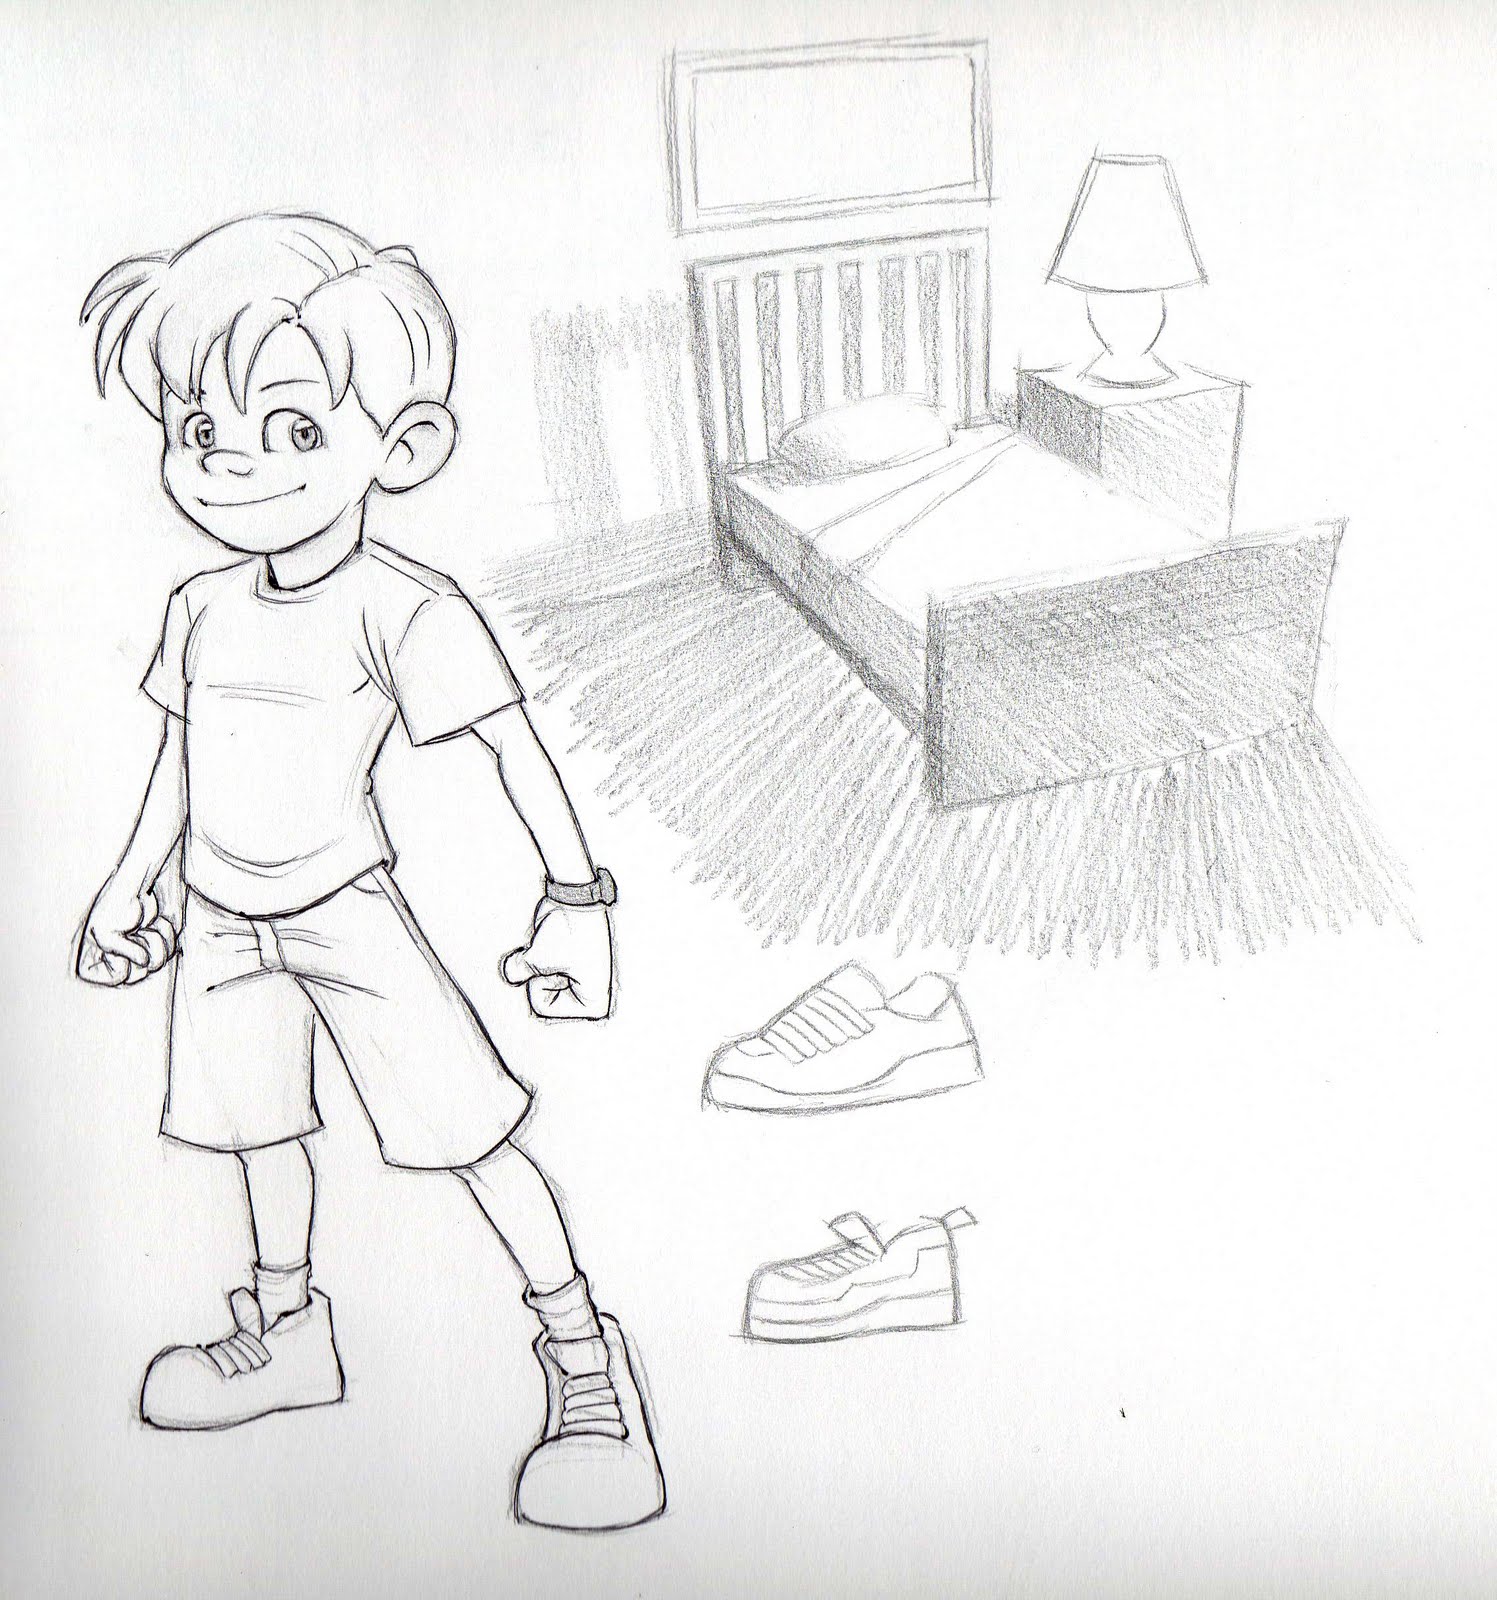 Dan's Sketchbook: Sickly Kid